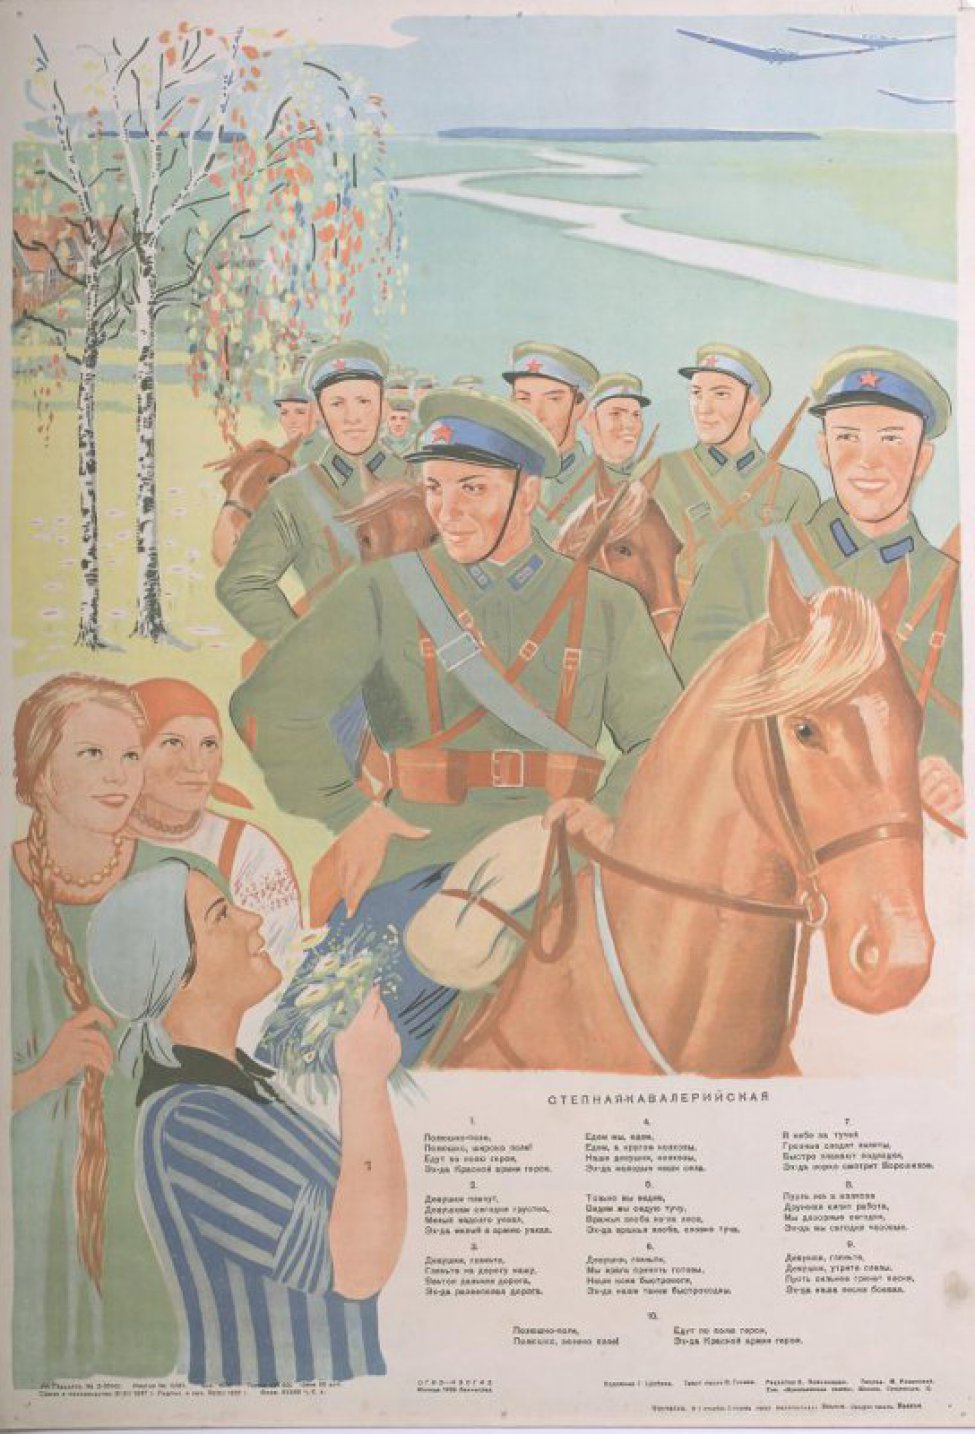 Изображена около берез с желтоватыми листьями, группа кавалеристов  на лошадях. Ниже слева три девушки и одна из них, подносит букет цветов. Справа текст песни " Полюшко... бонвая".